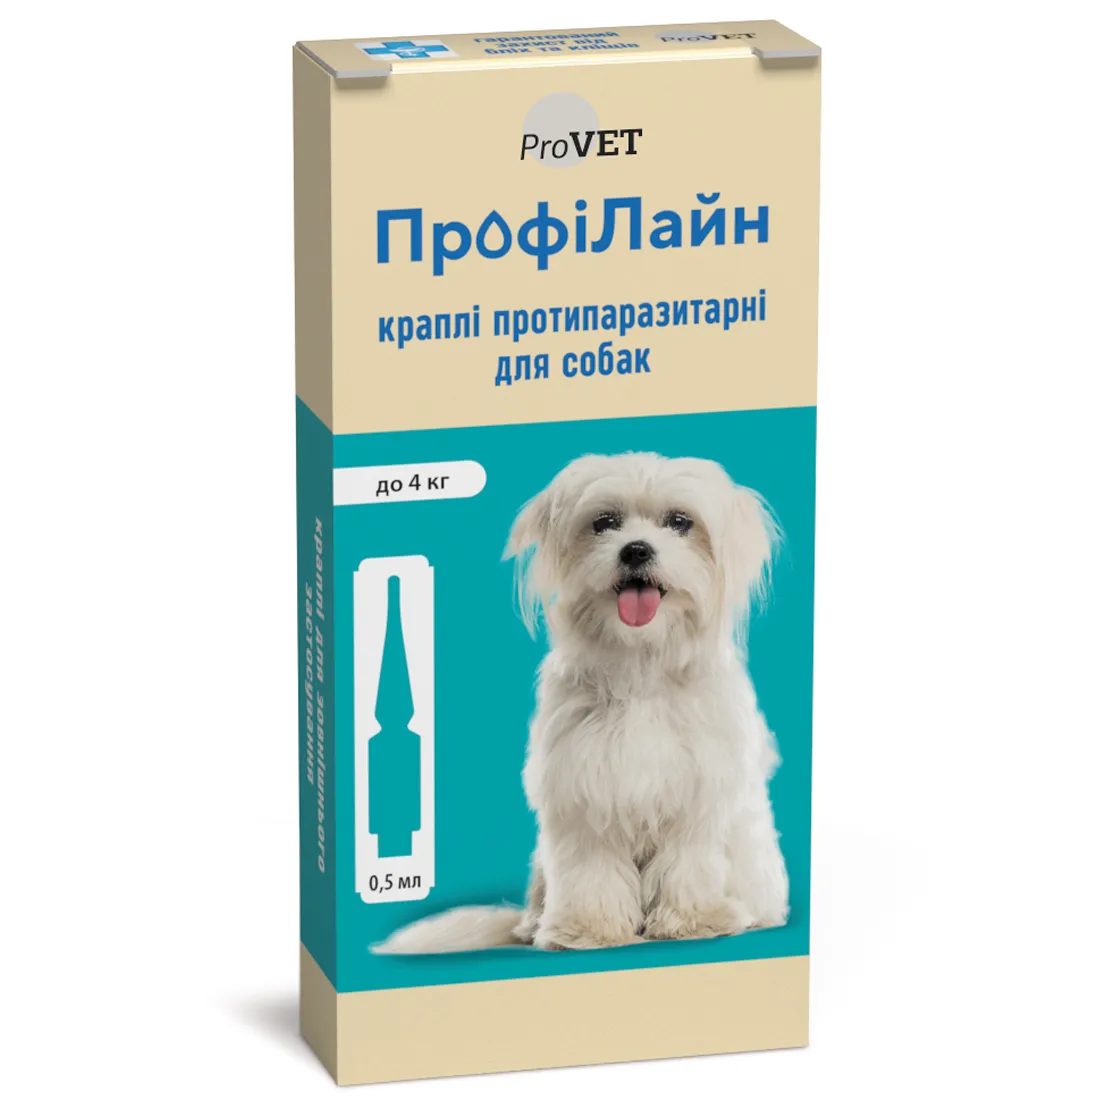 Photos - Dog Medicines & Vitamins ProVET Краплі на холку для собак  ПрофіЛайн, від зовнішніх паразитів, до 4 